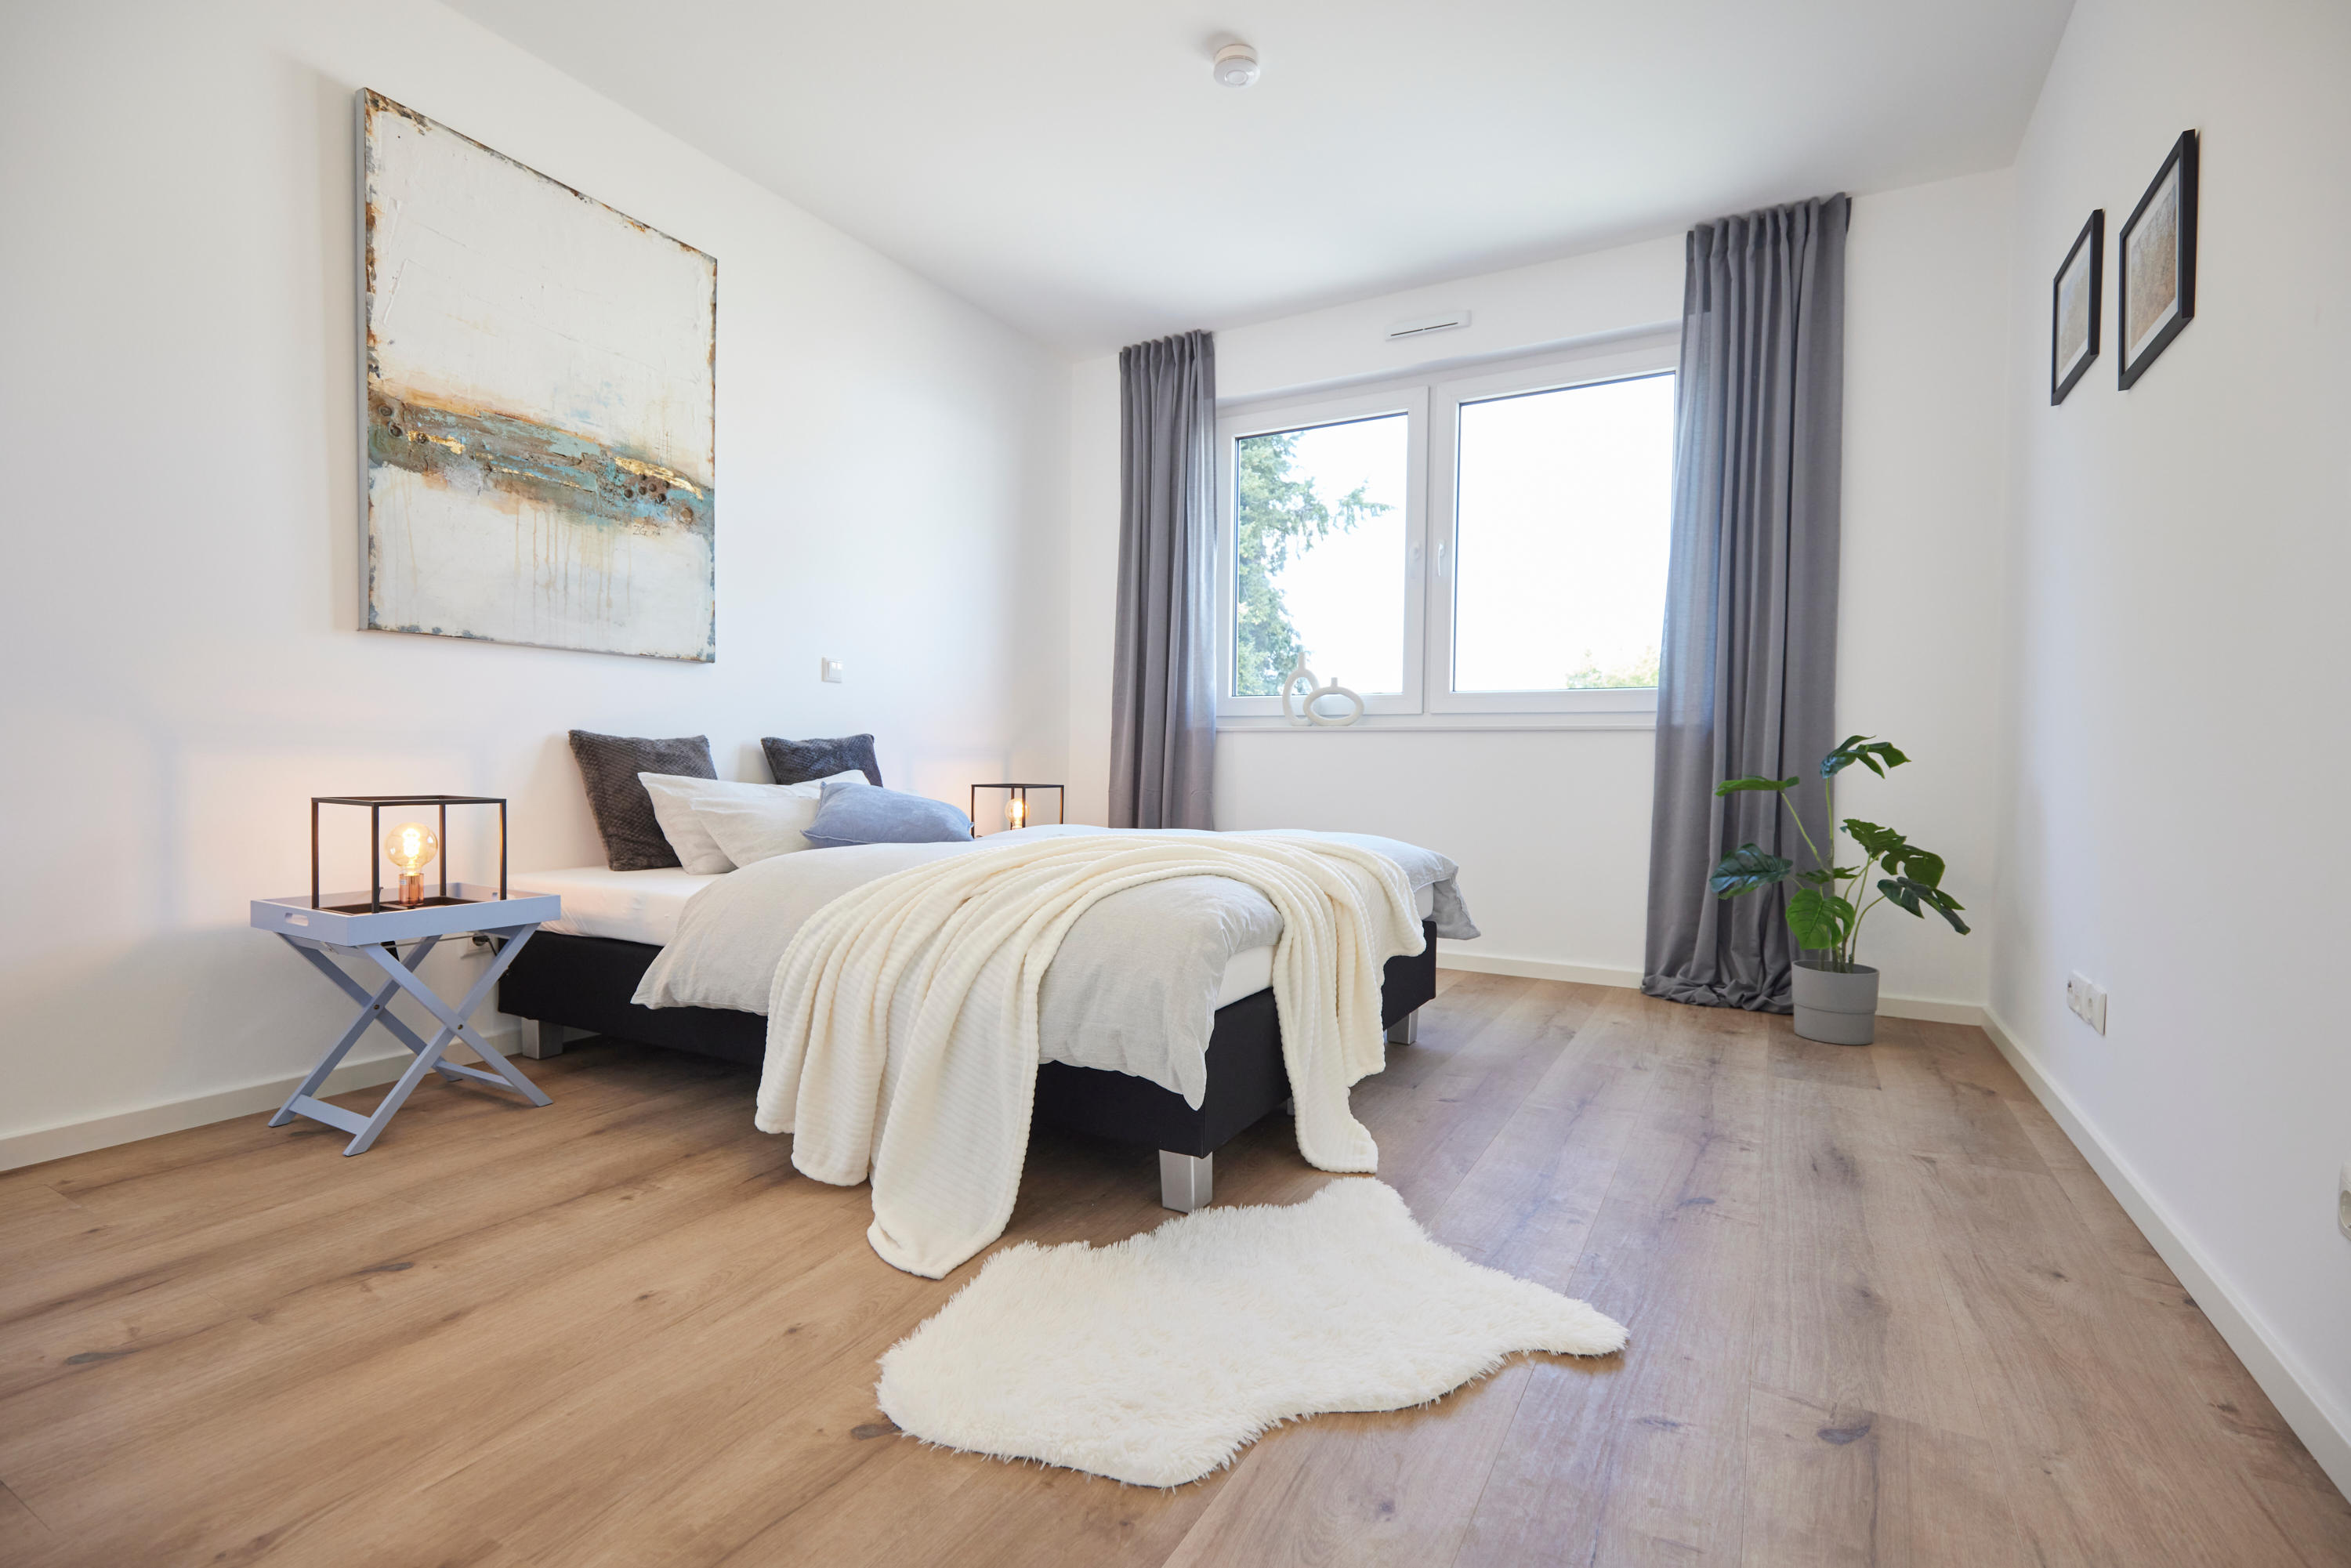 Bilder STAGING DUO – Home Staging Agentur in Düsseldorf